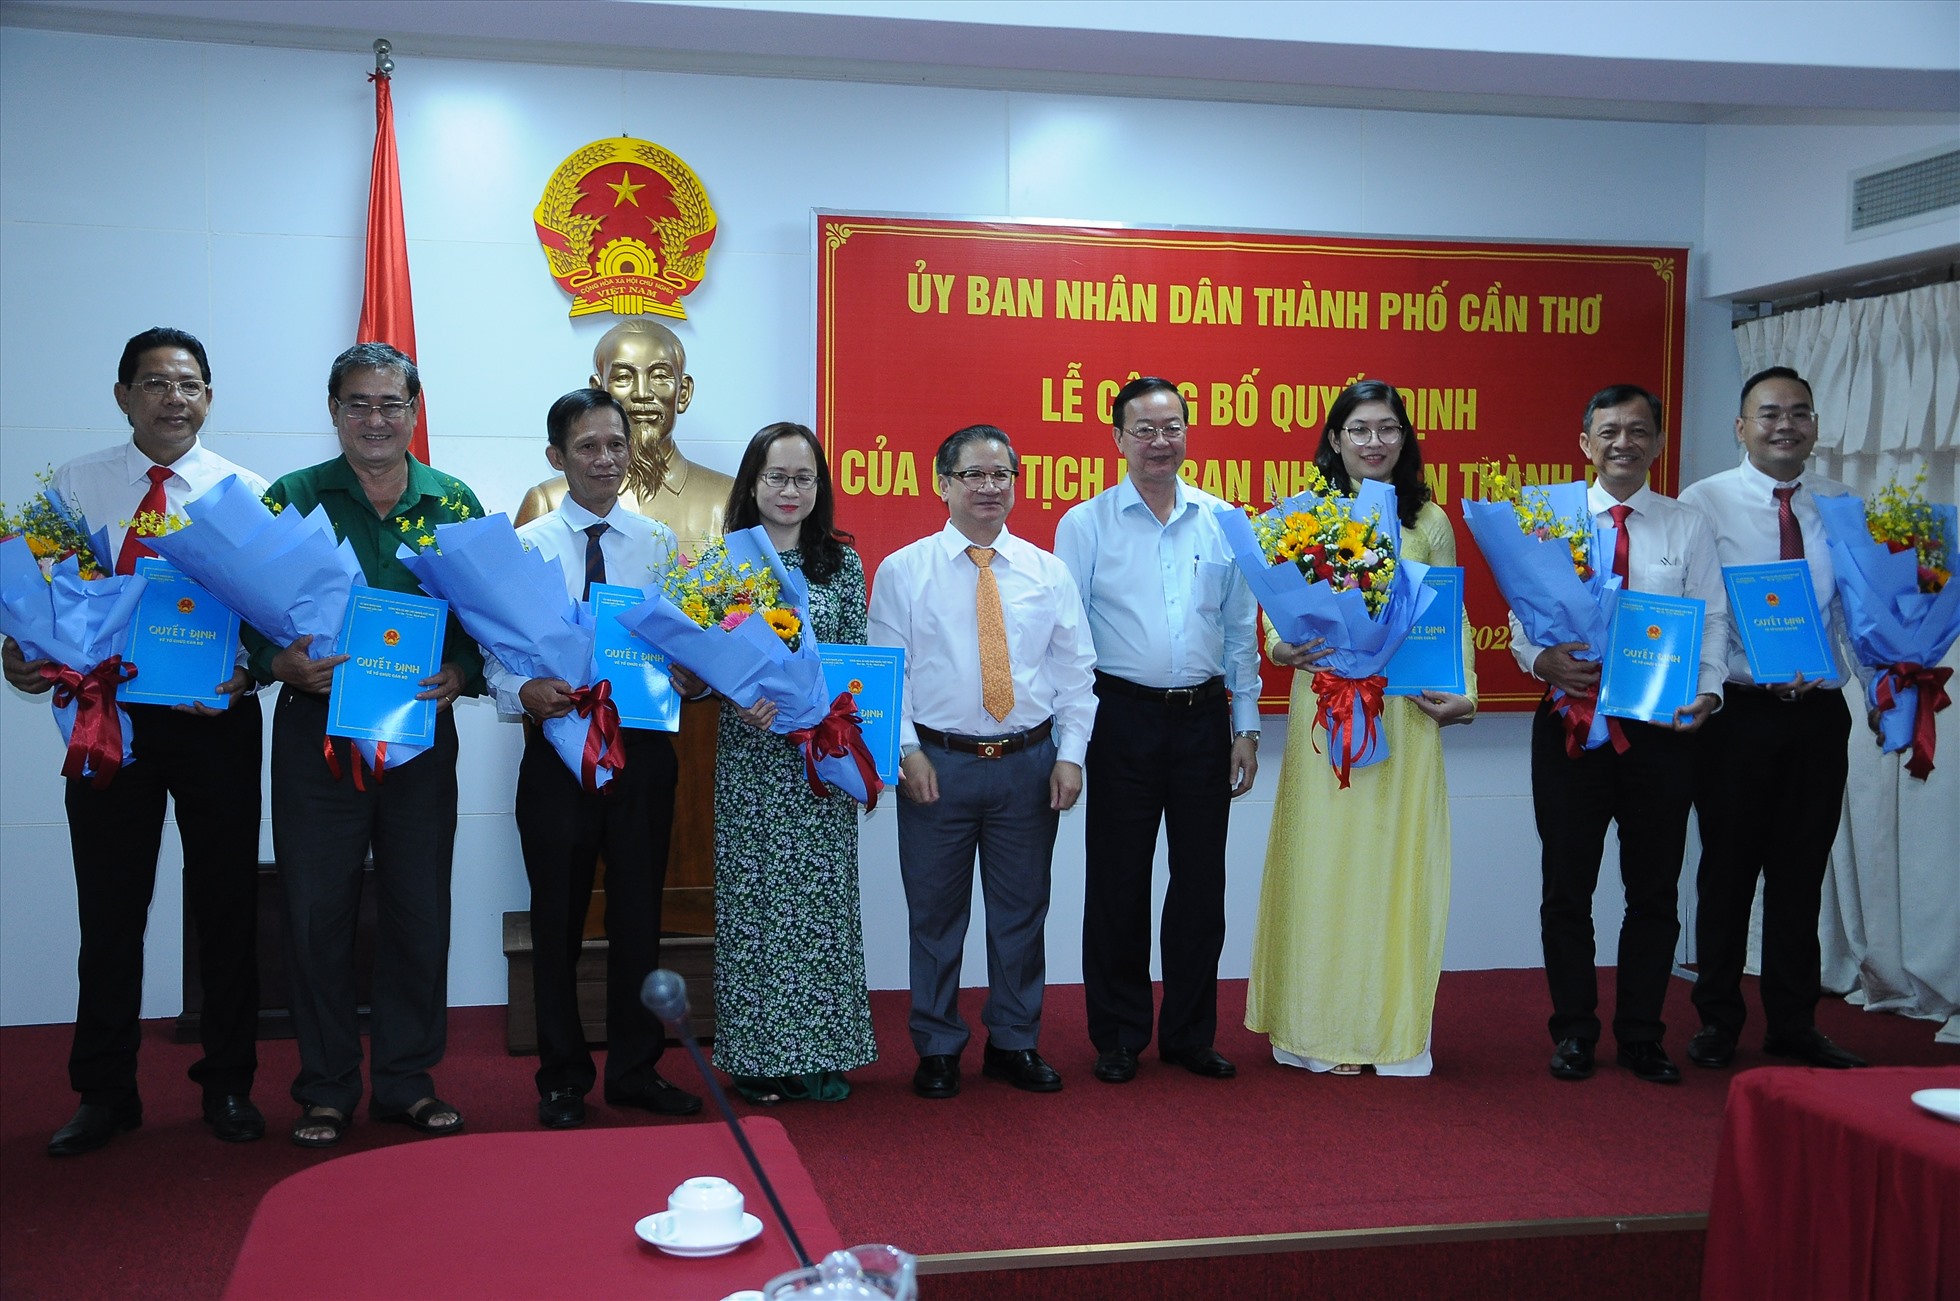 Chủ tịch UBND TP Trần Việt Trường trao quyết định và tặng hoa chúc mừng các cán bộ được bổ nhiệm. Ảnh: Cảnh Kỳ